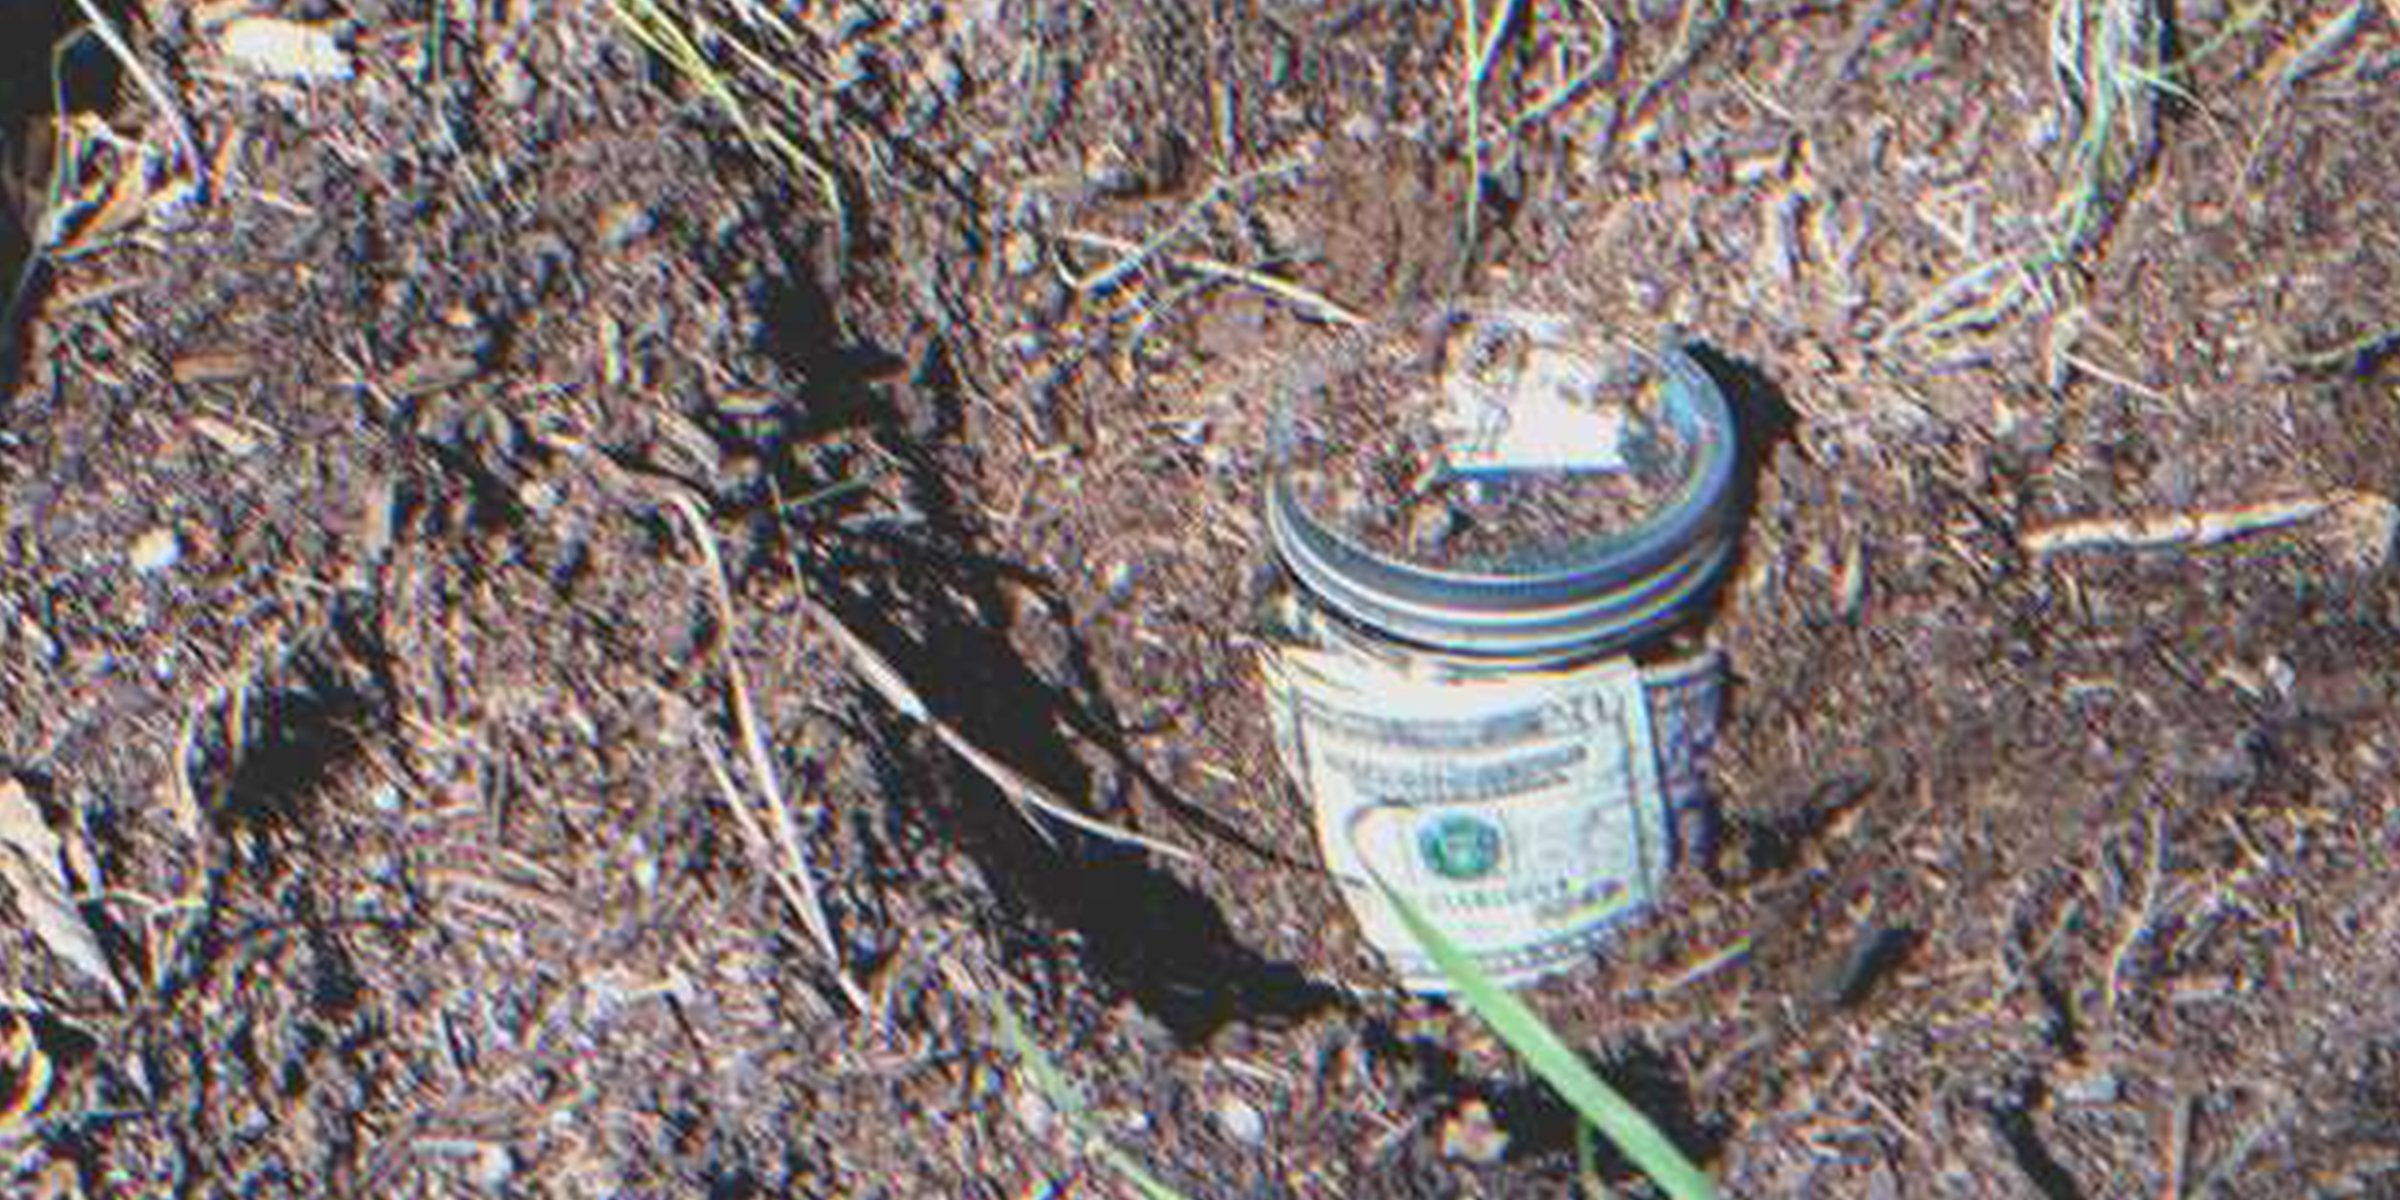 Una jarra de vidrio llena de billetes enterrada en el suelo | Foto: Shutterstock